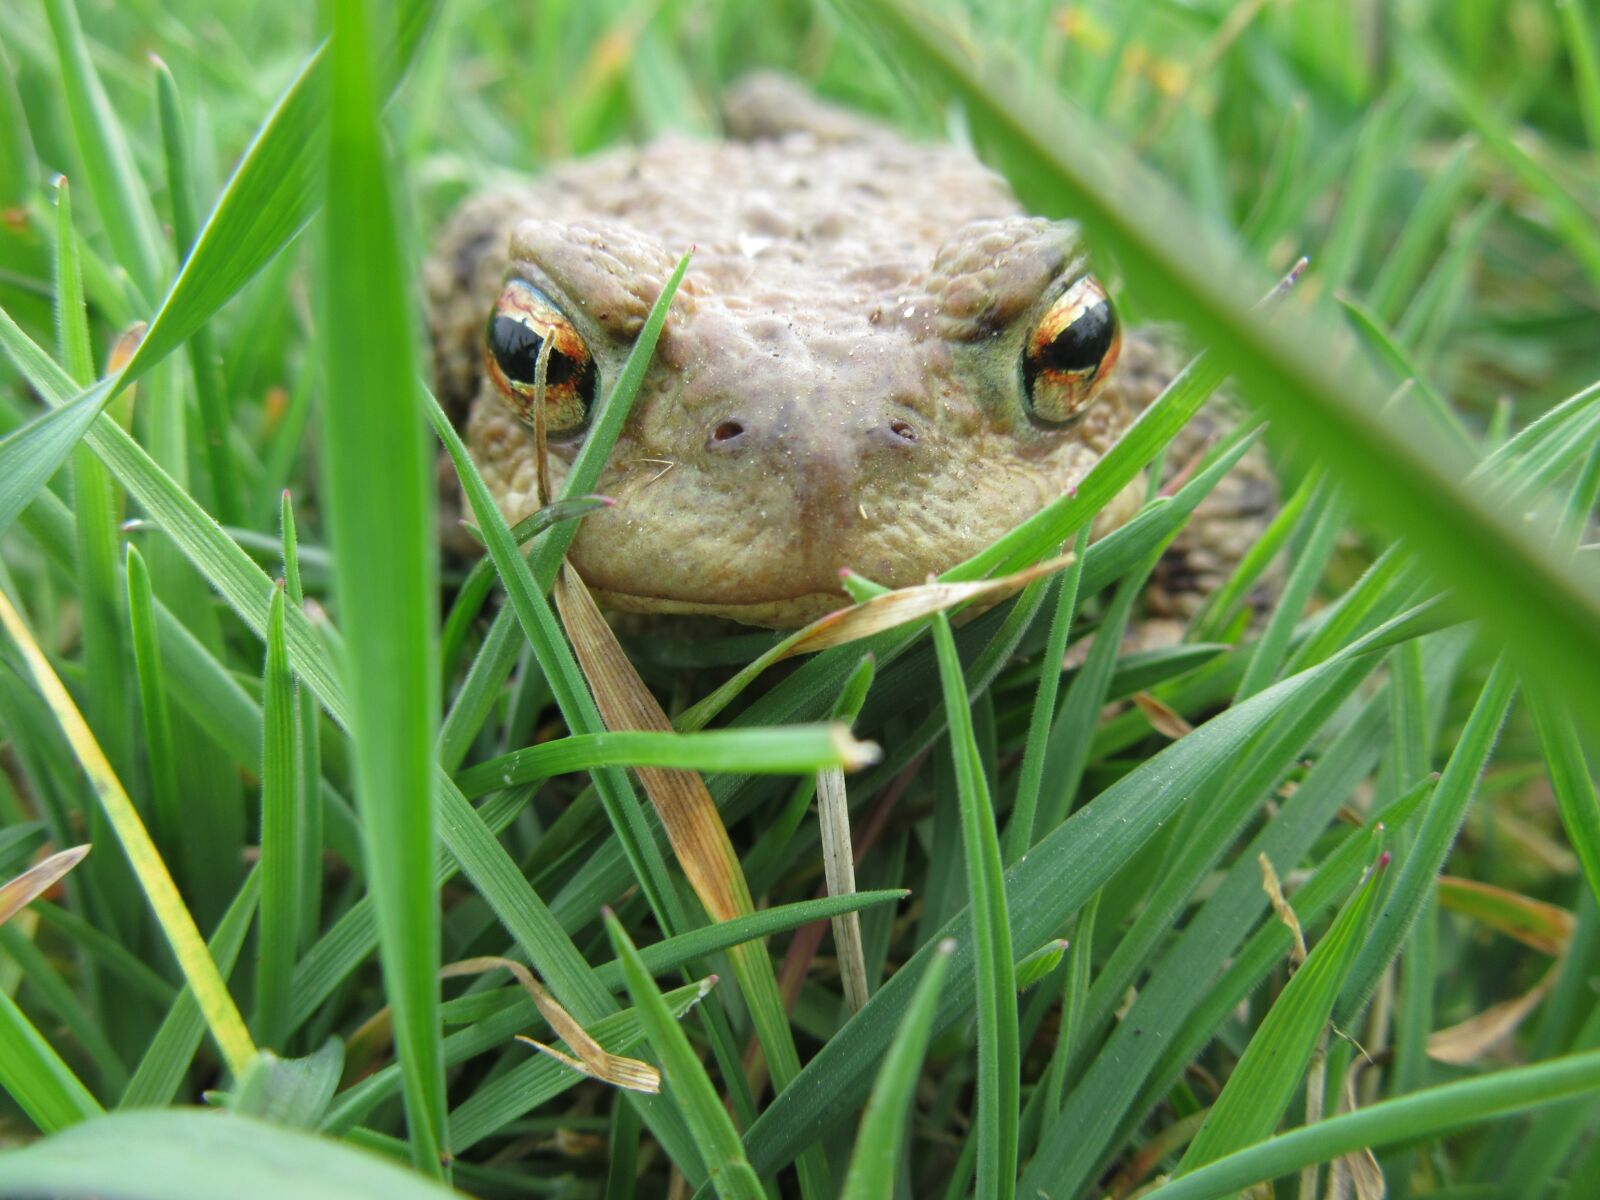 Common animal. Лягушка обычная. Обыкновенная жаба. Обыкновенная дождевая лягушка. Зелёные животные в природе.